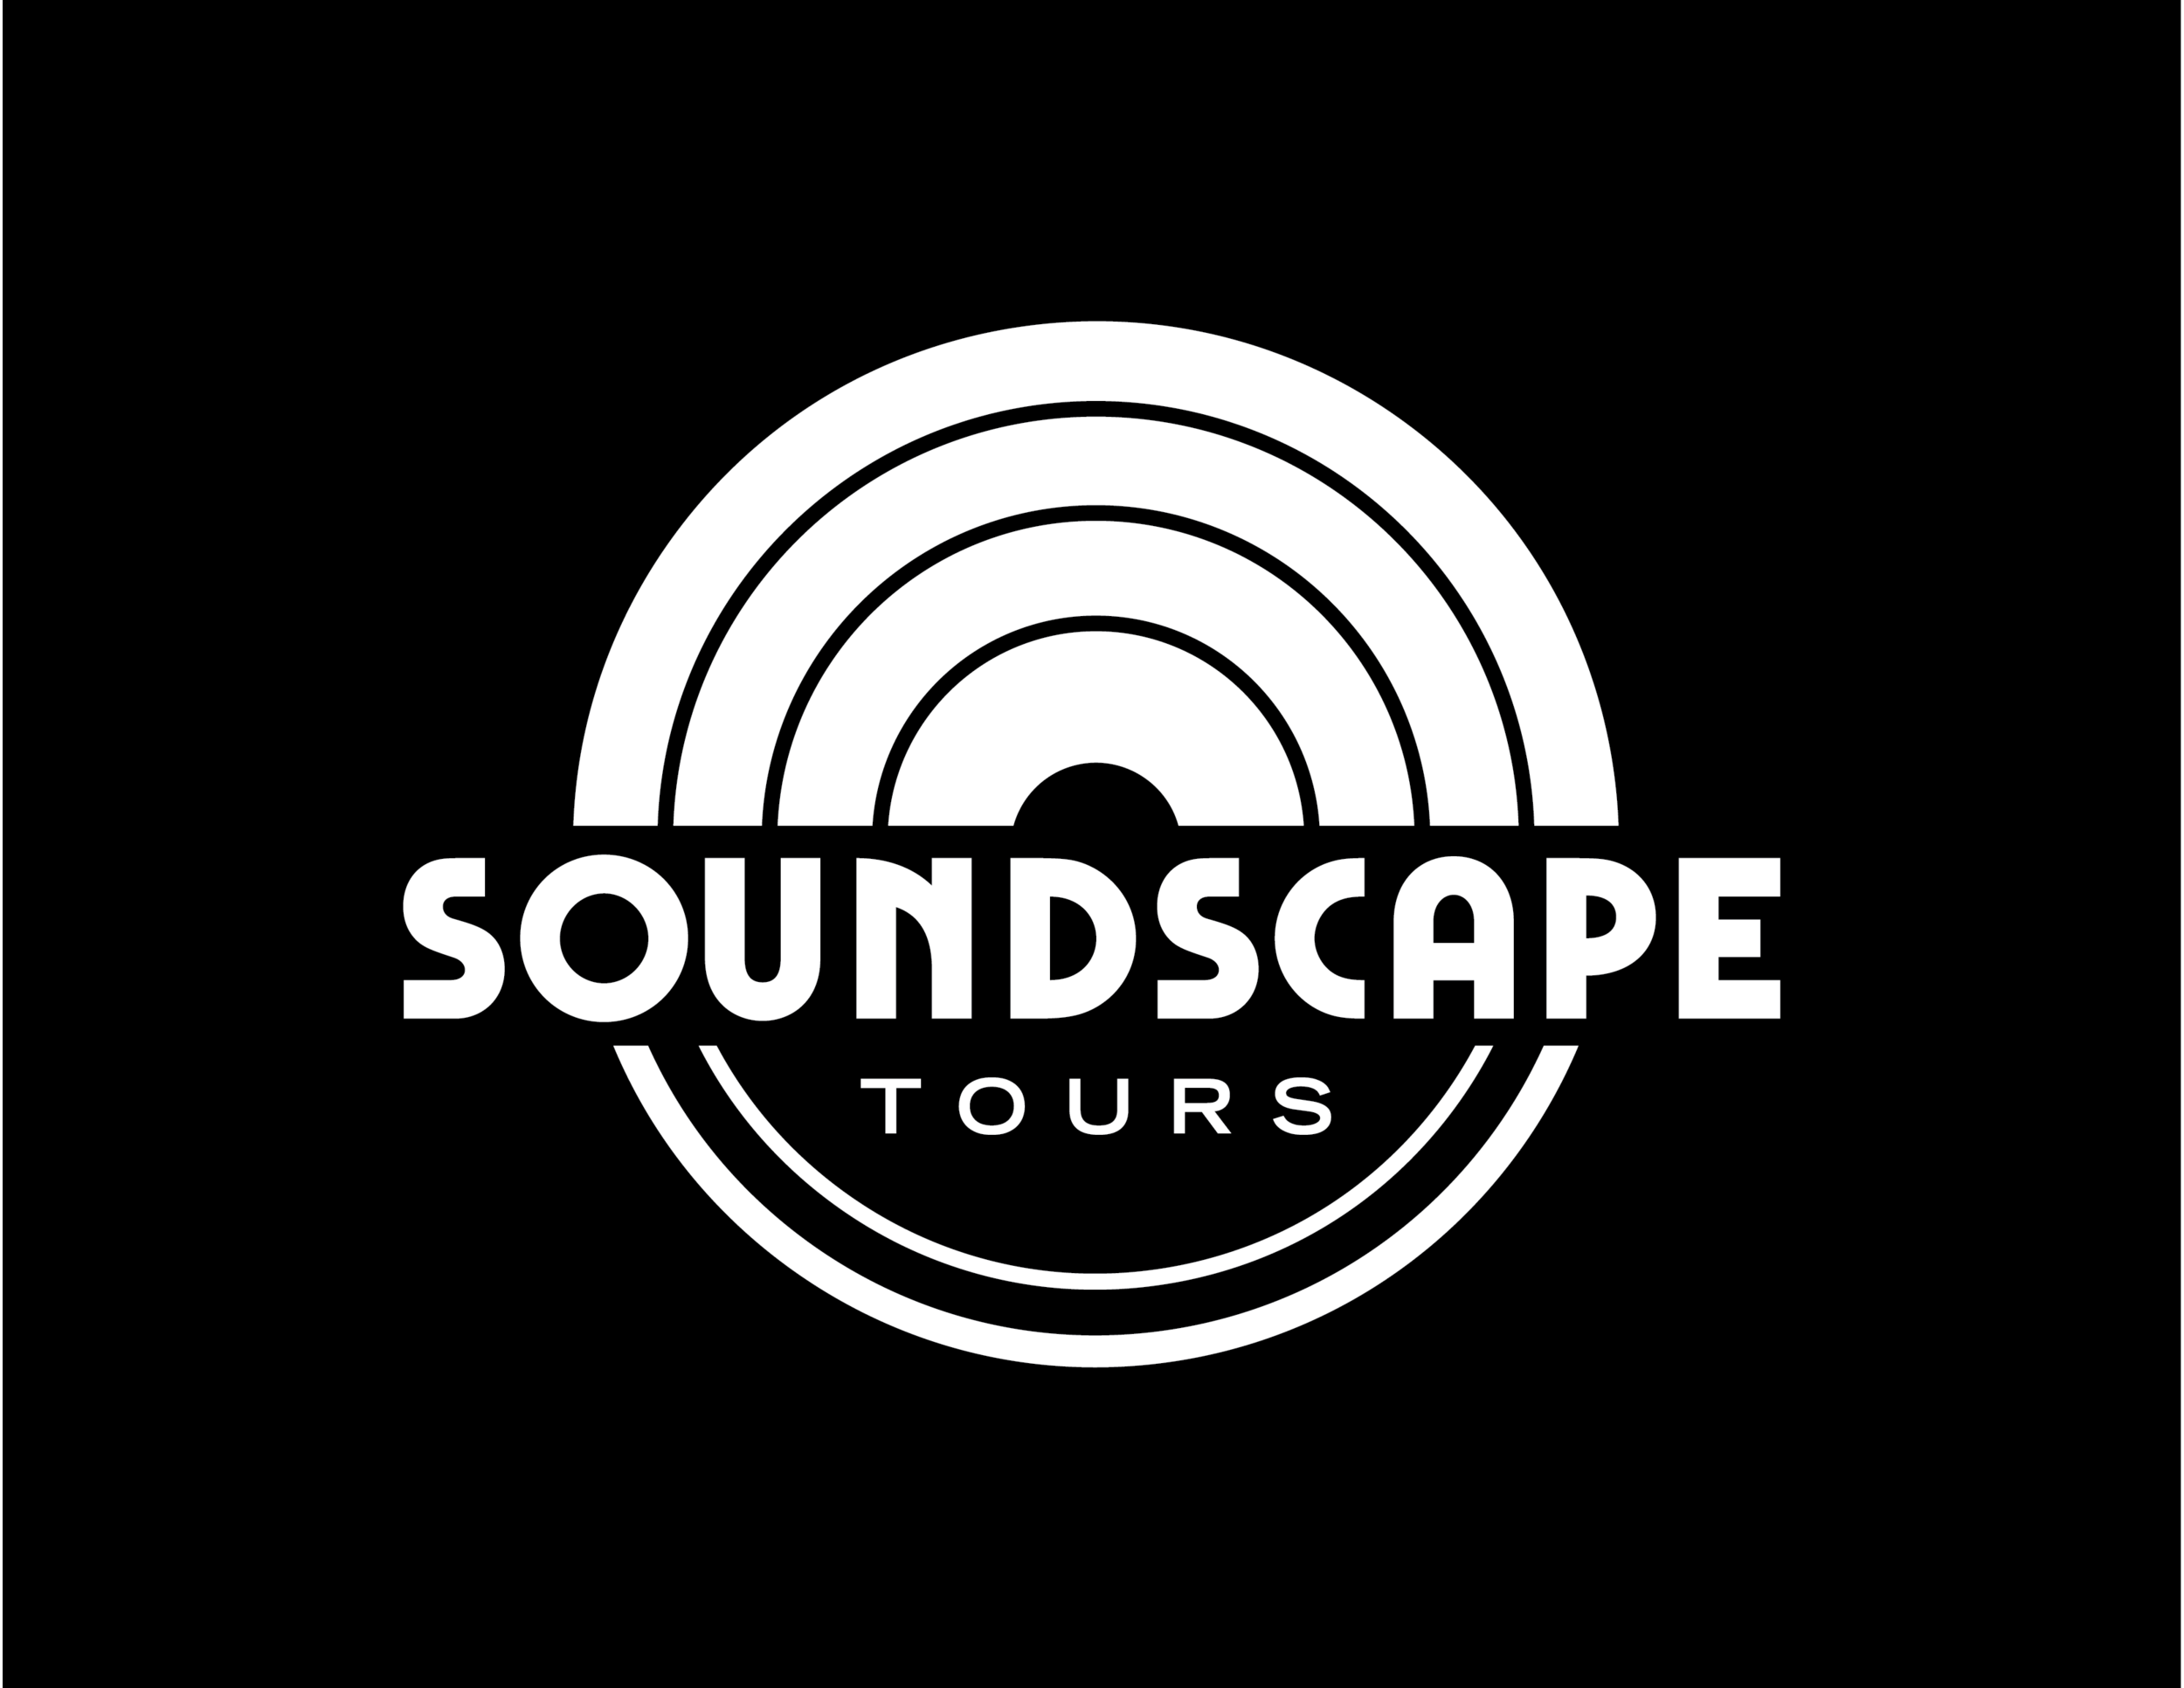 Soundscape Tours